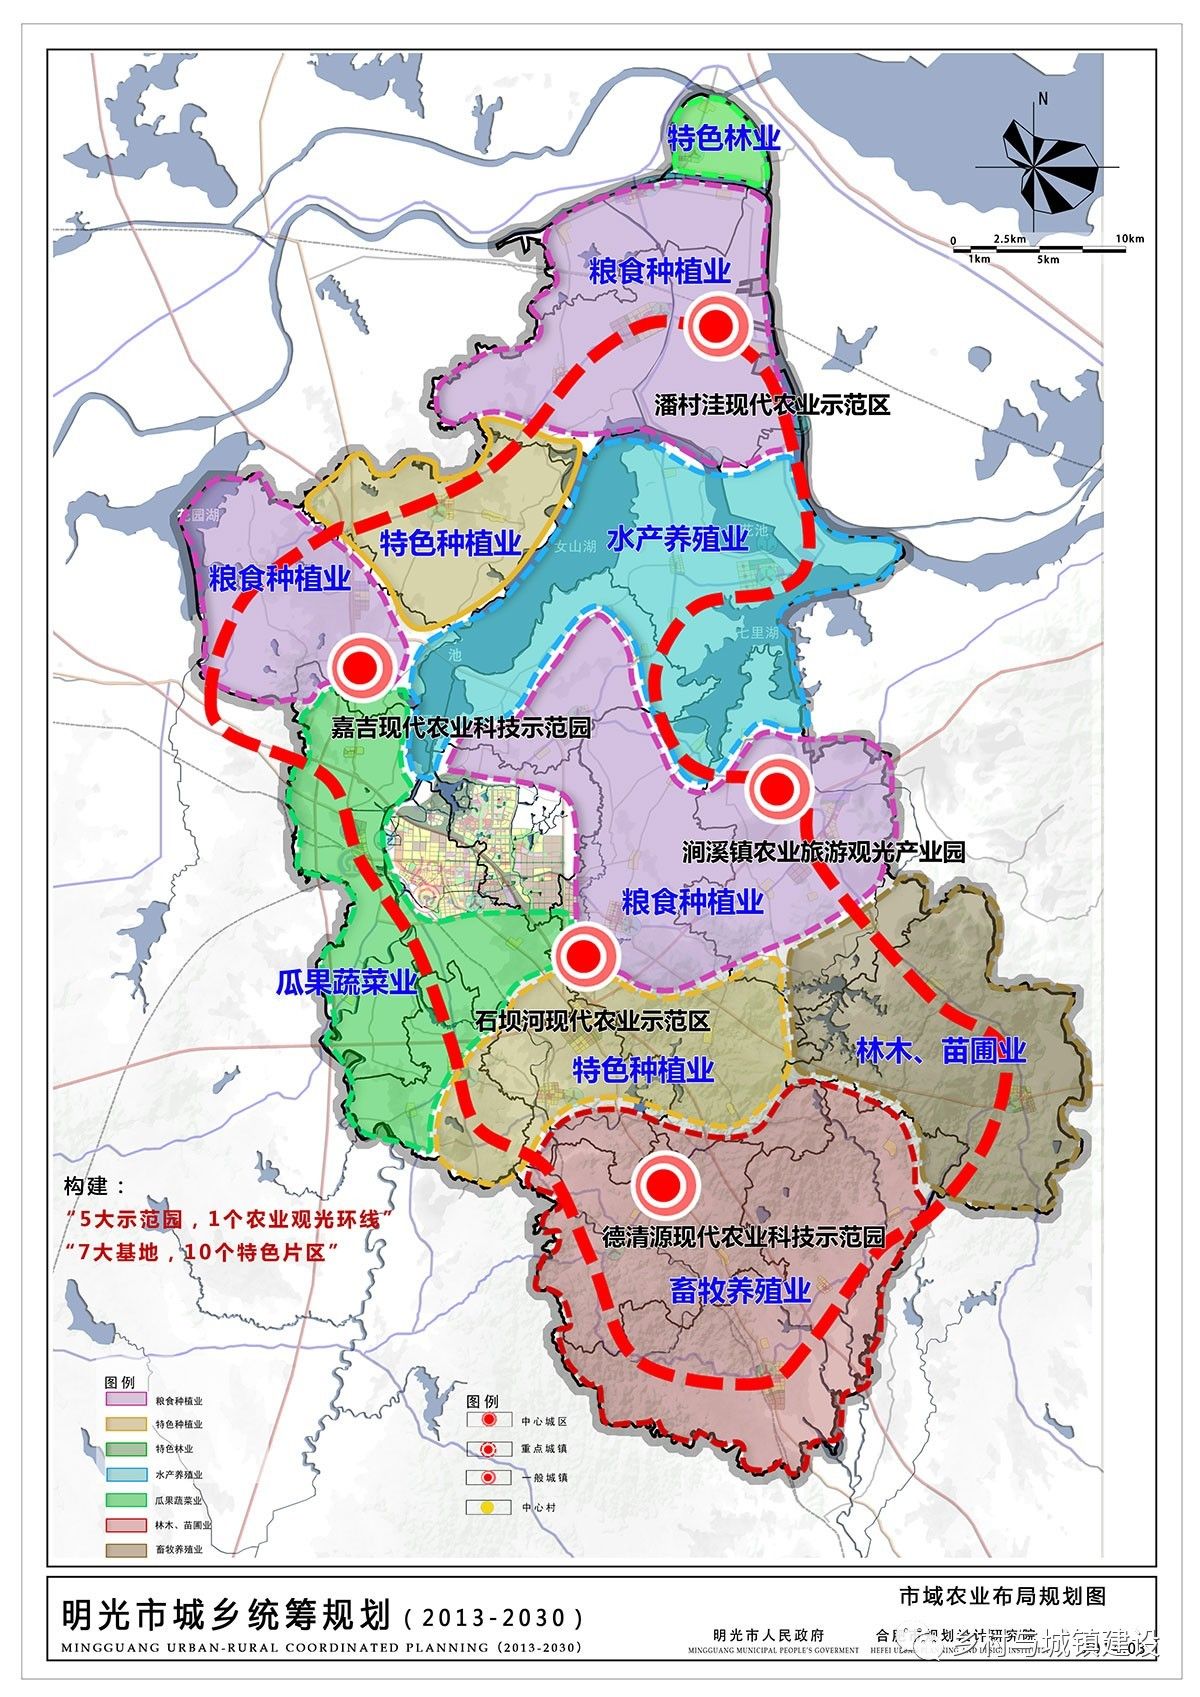 【2015年度全国规划评优】明光市城乡统筹规划(2013-2030)